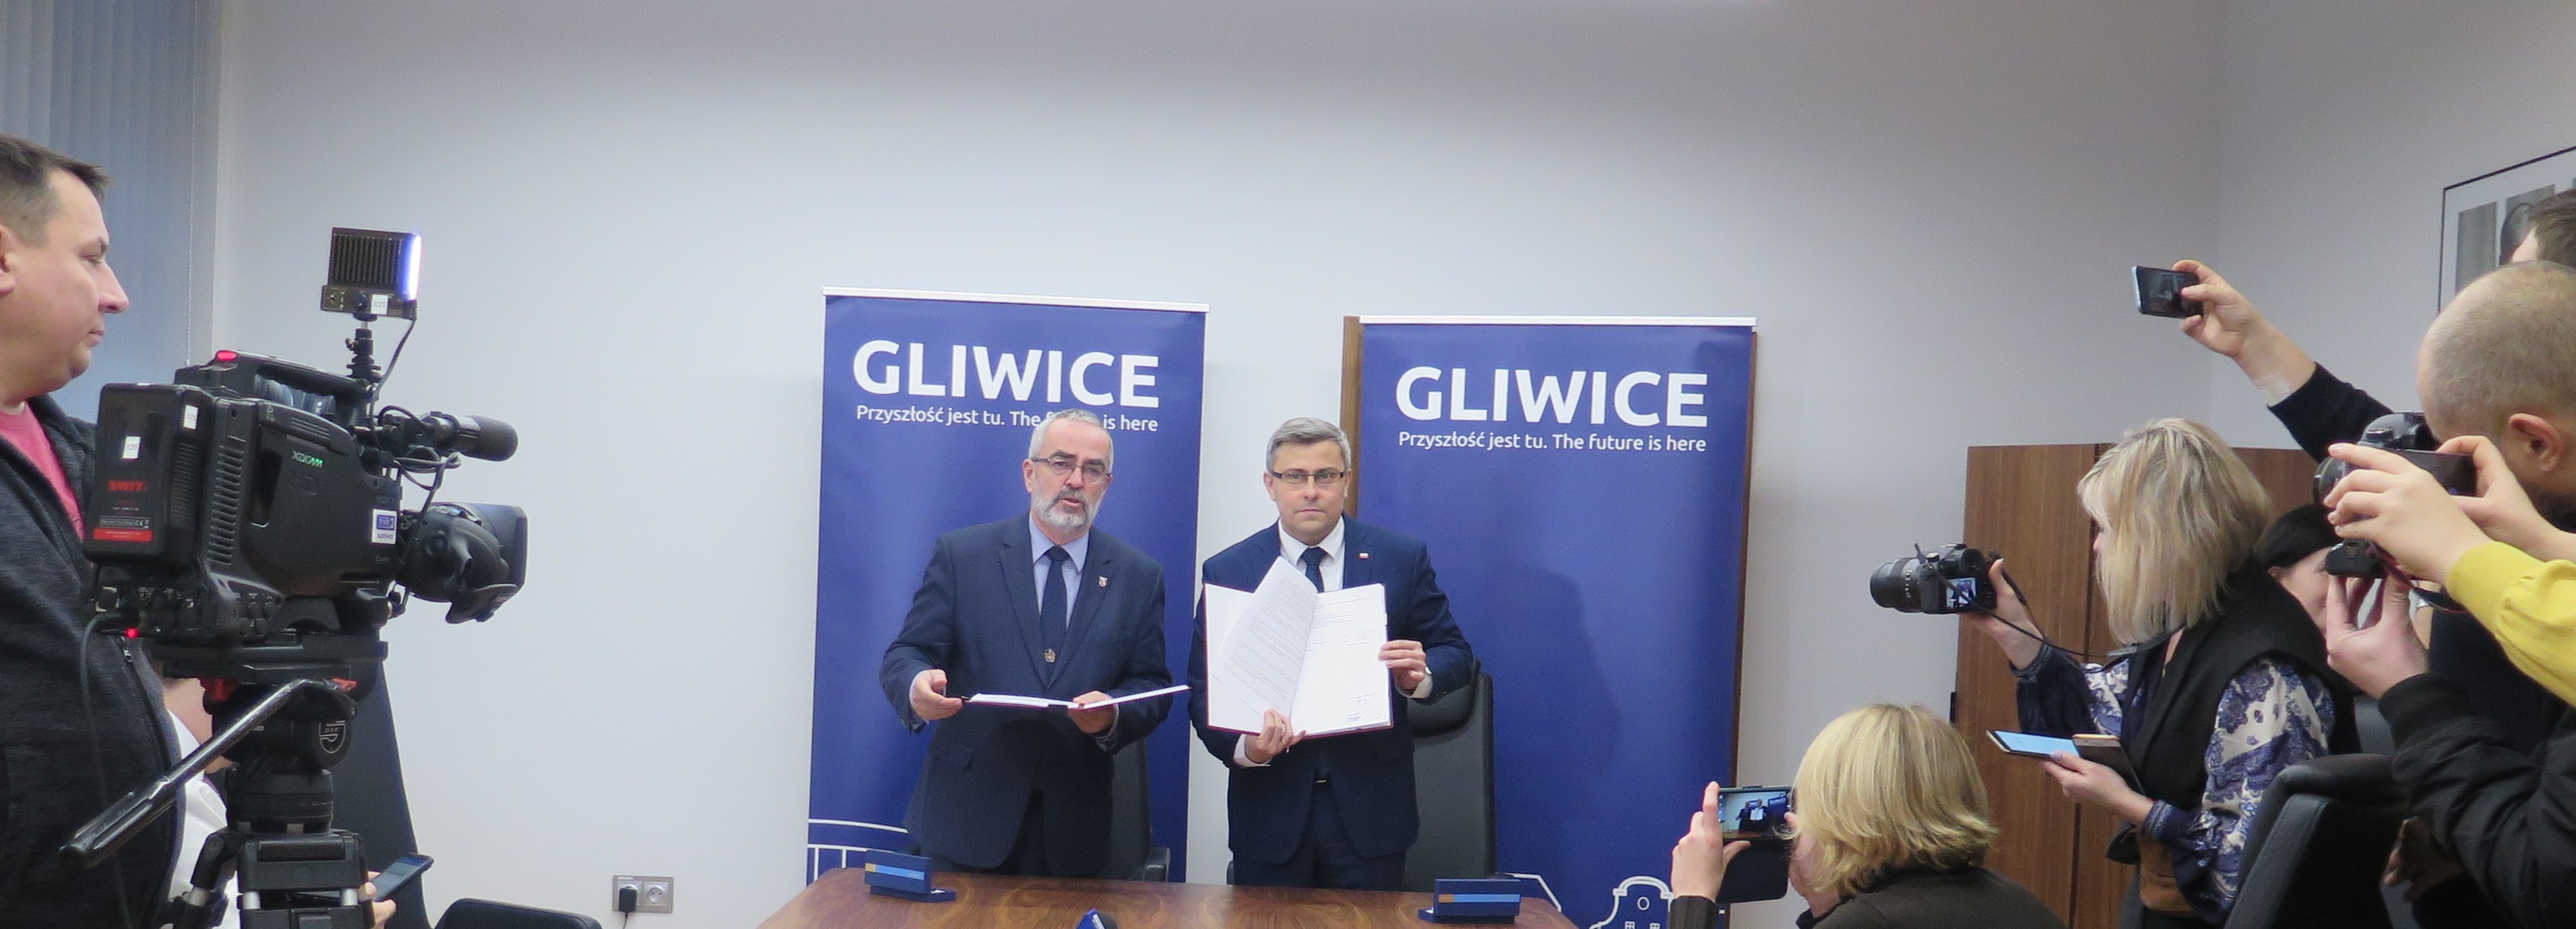 prezentacja umowy na dofinansowanie budowy południowej obwodnicy Gliwic 